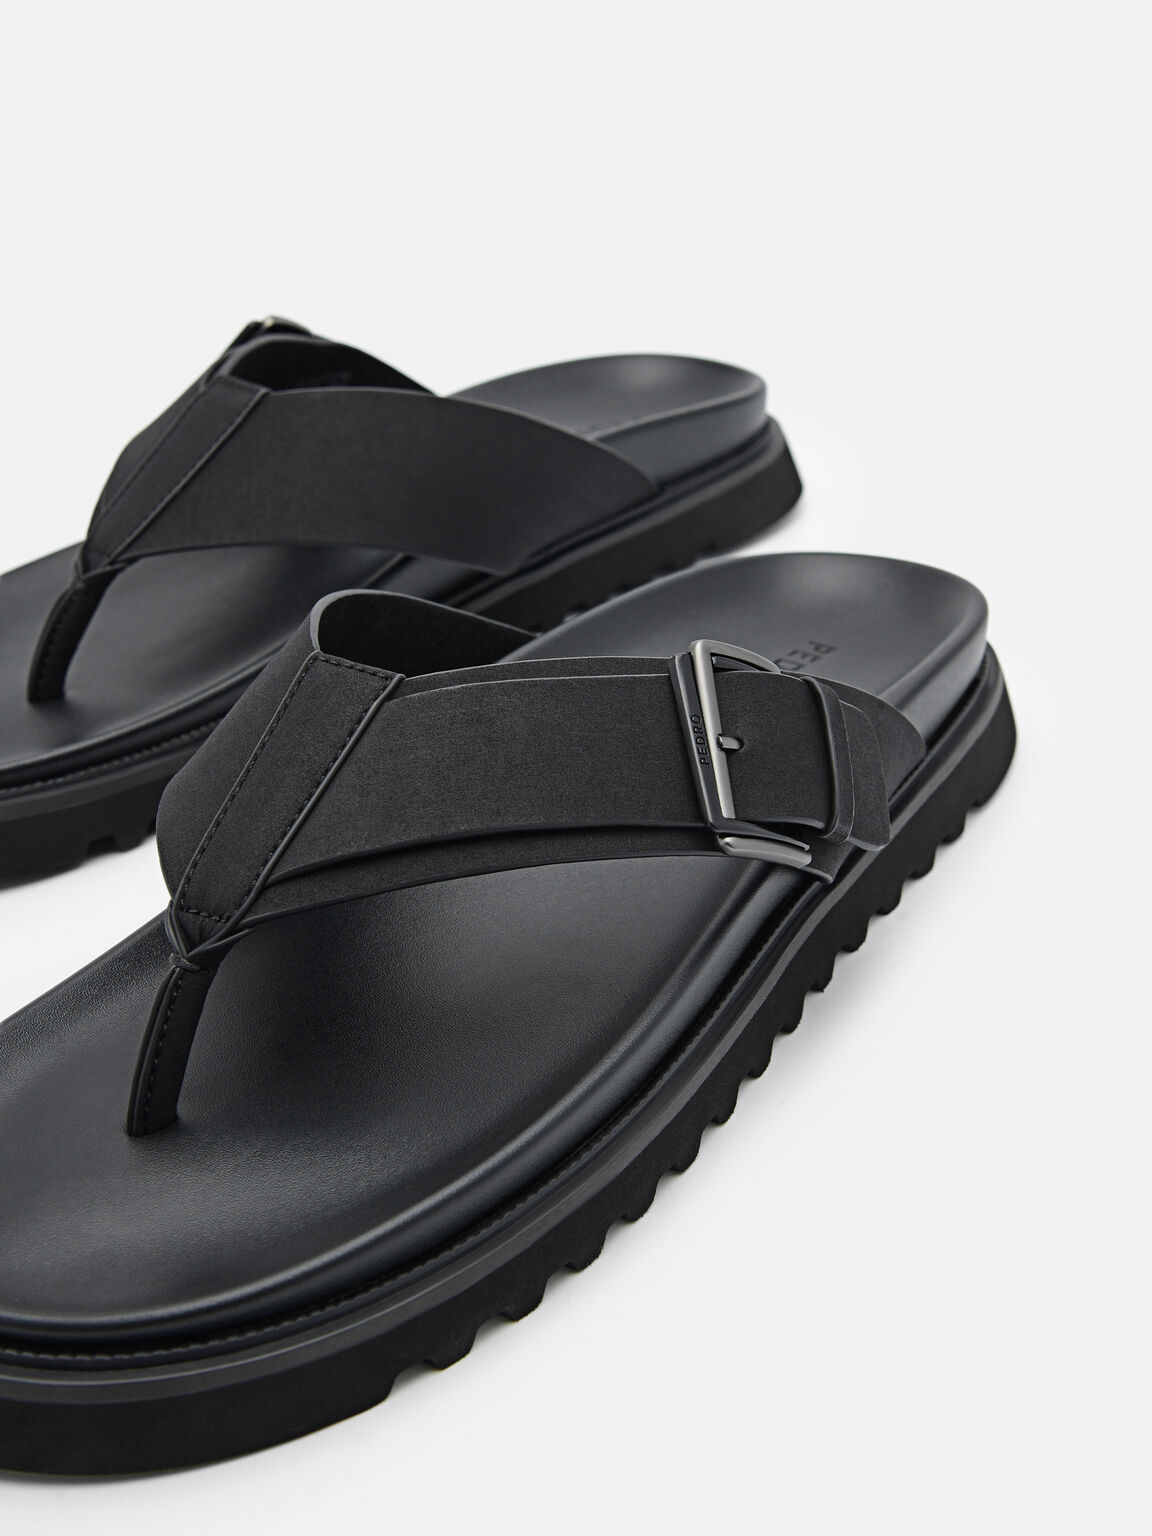 Arche Thong Sandals, Black, hi-res